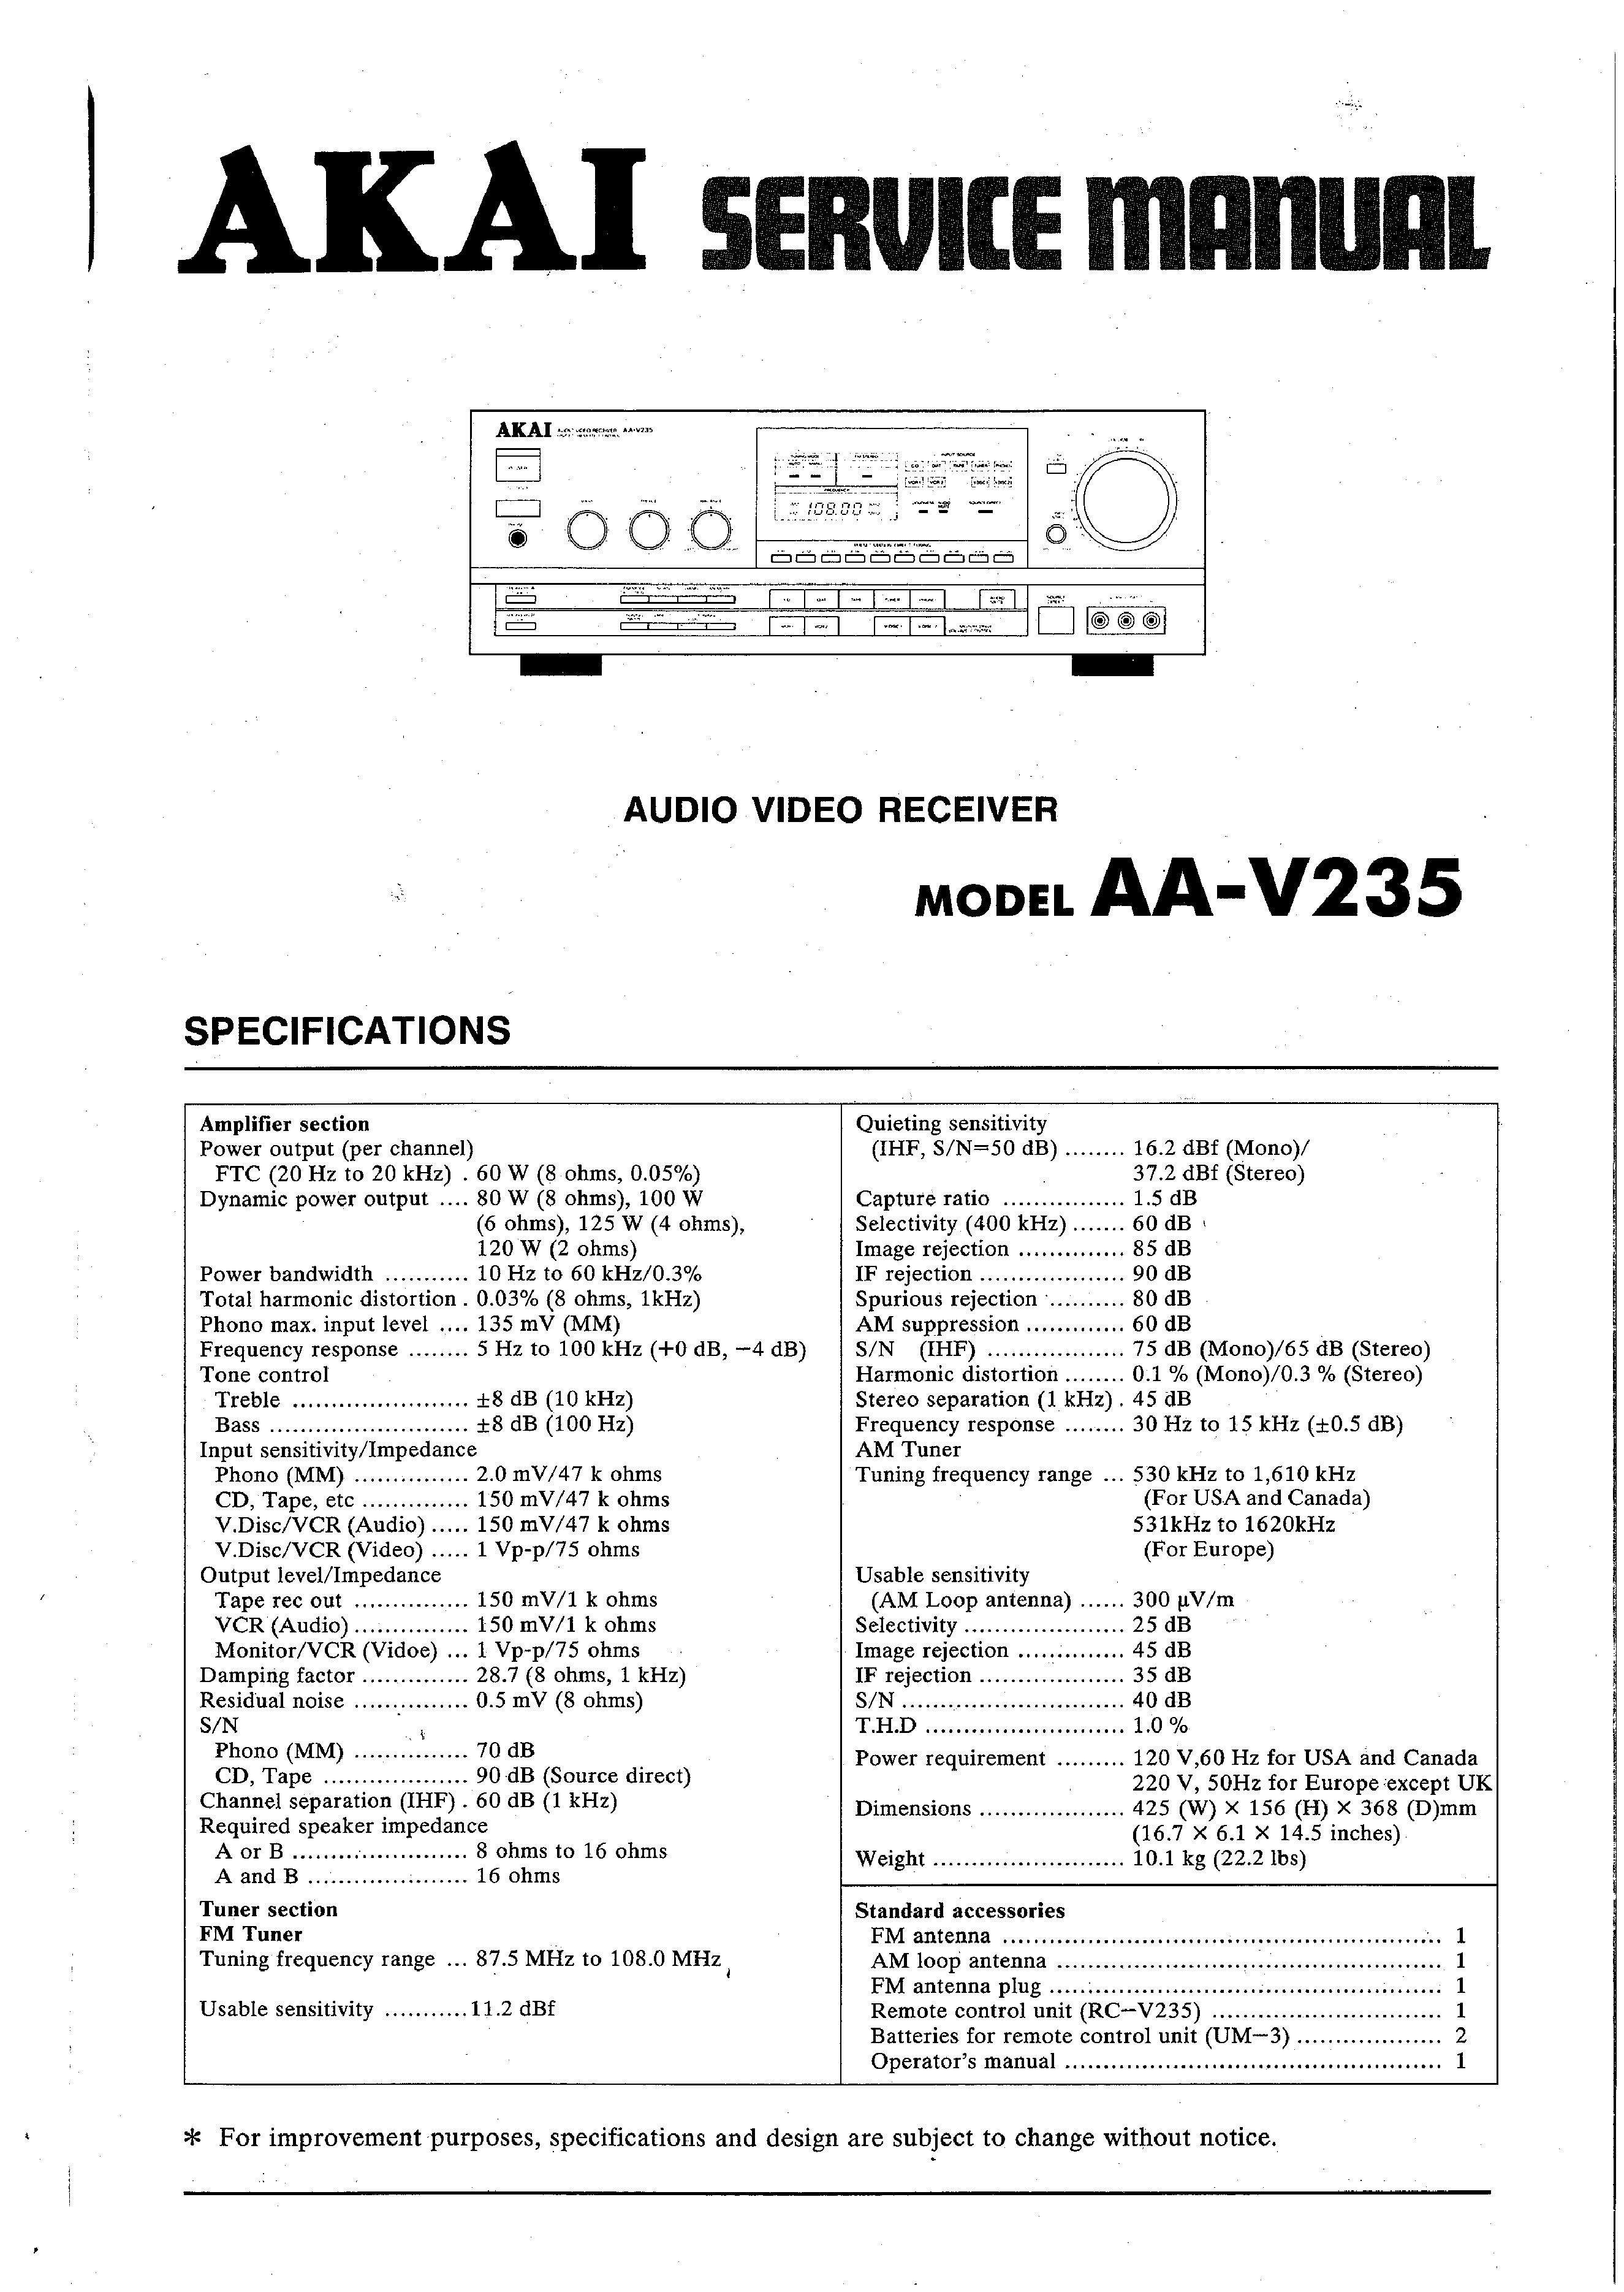 Original Service Manual esquema eléctrico Akai aa-v235 